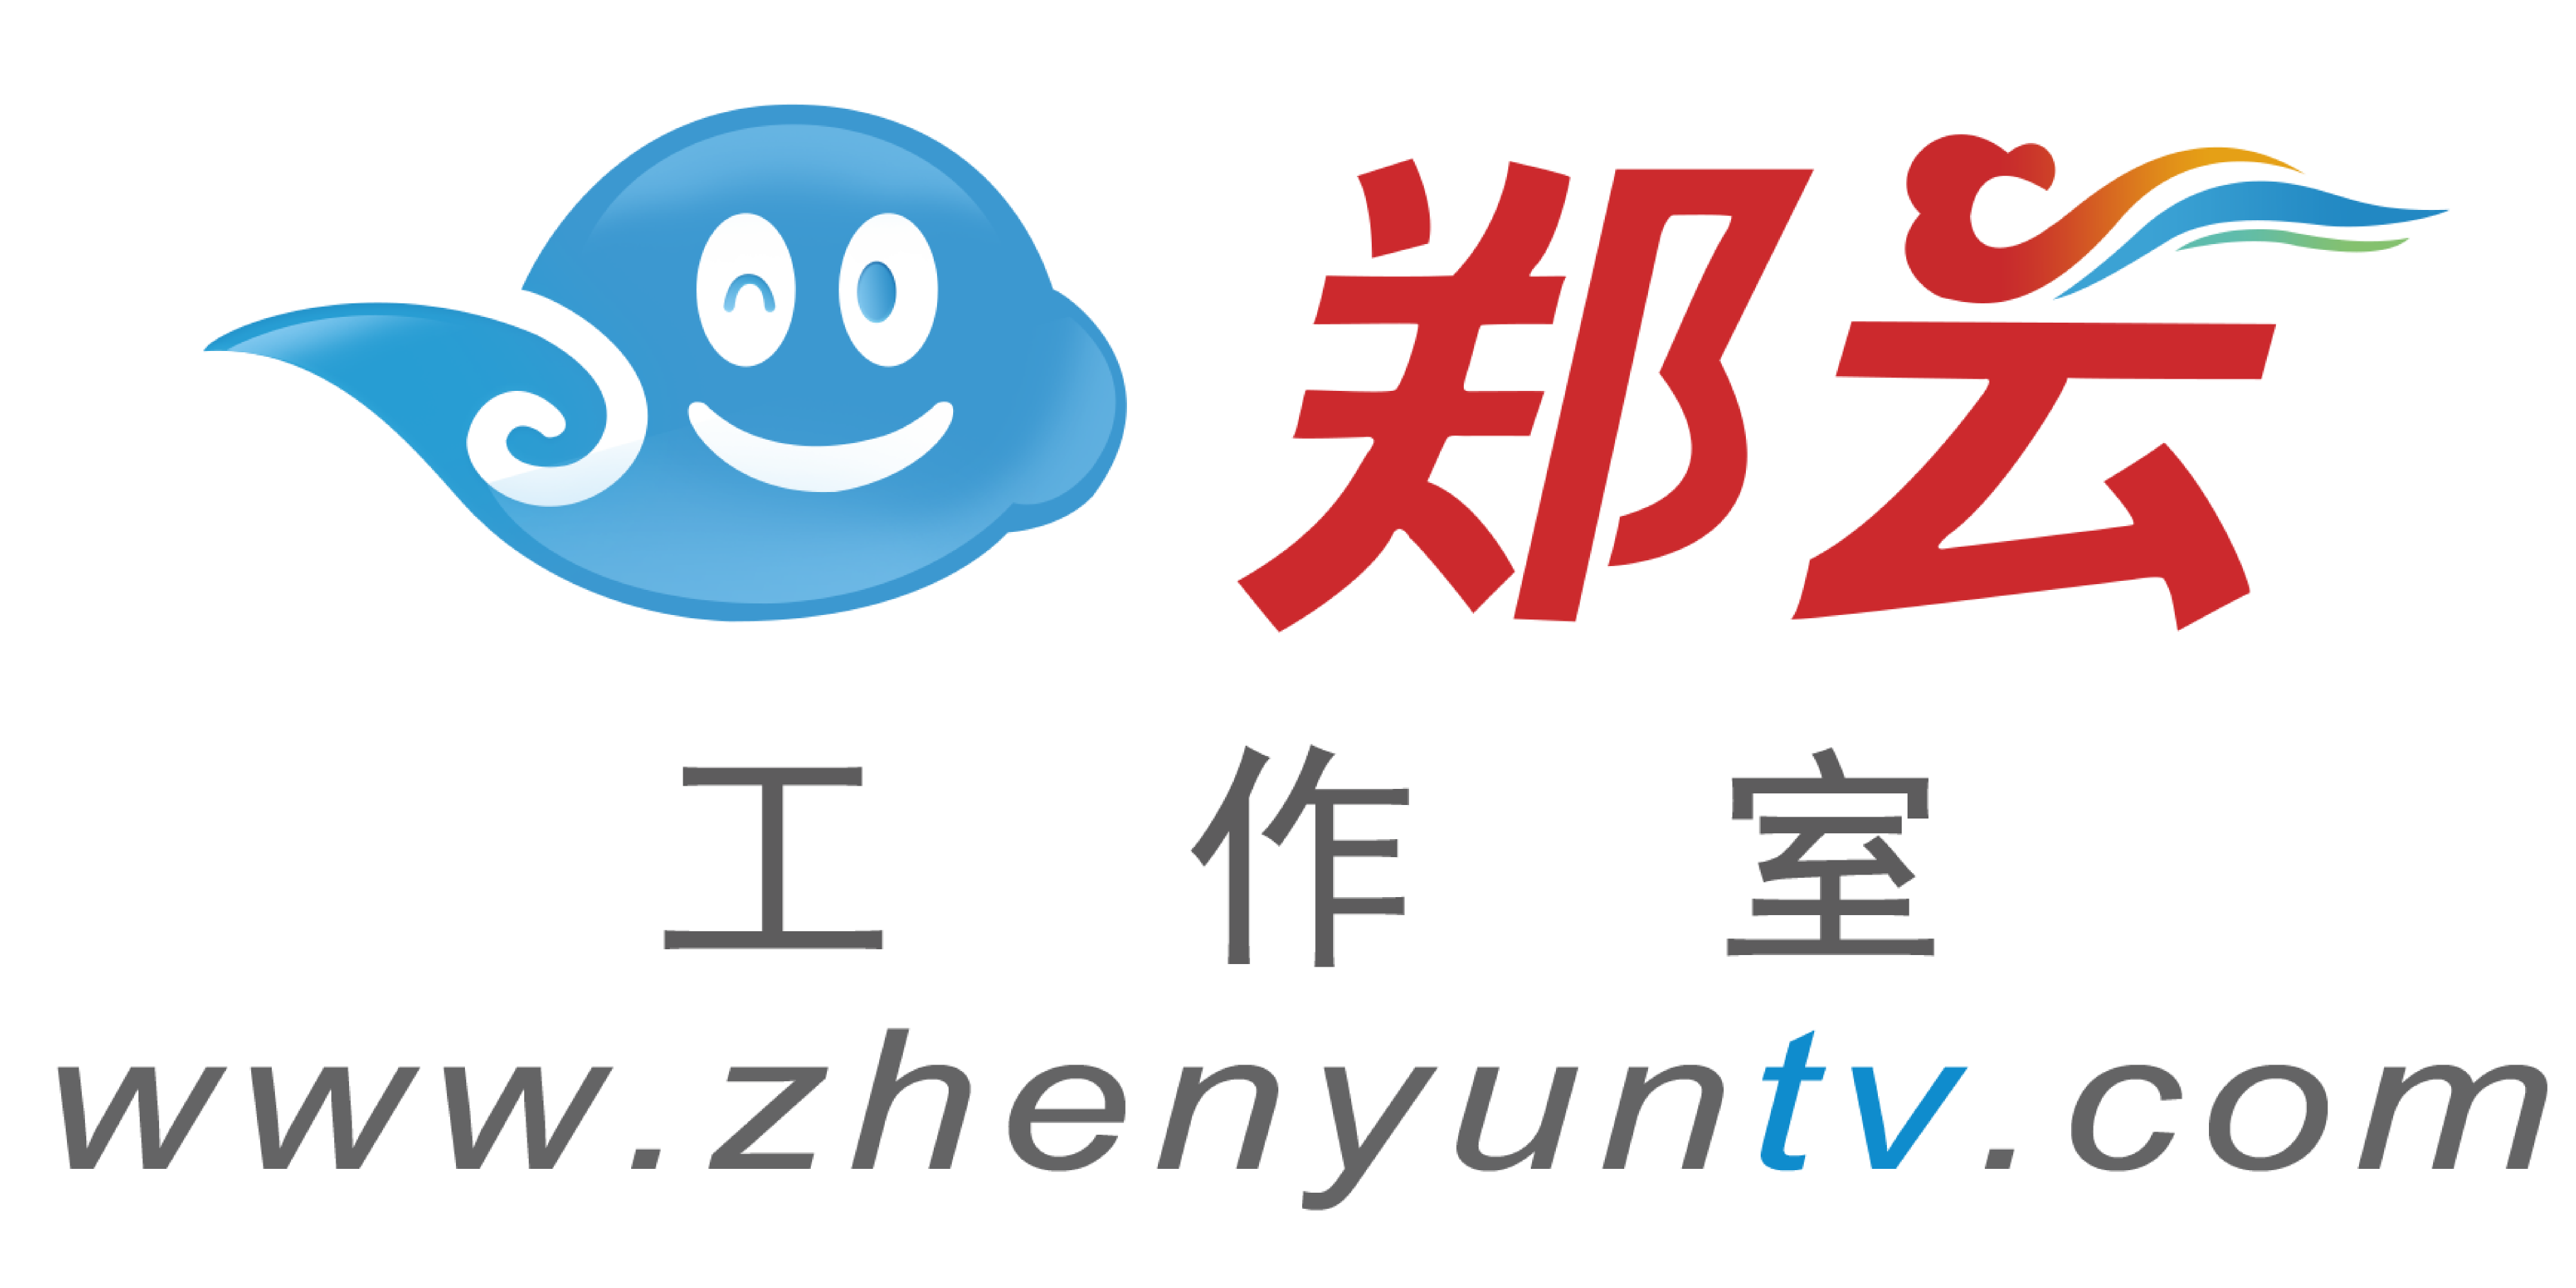 鄭雲工作室logo.png